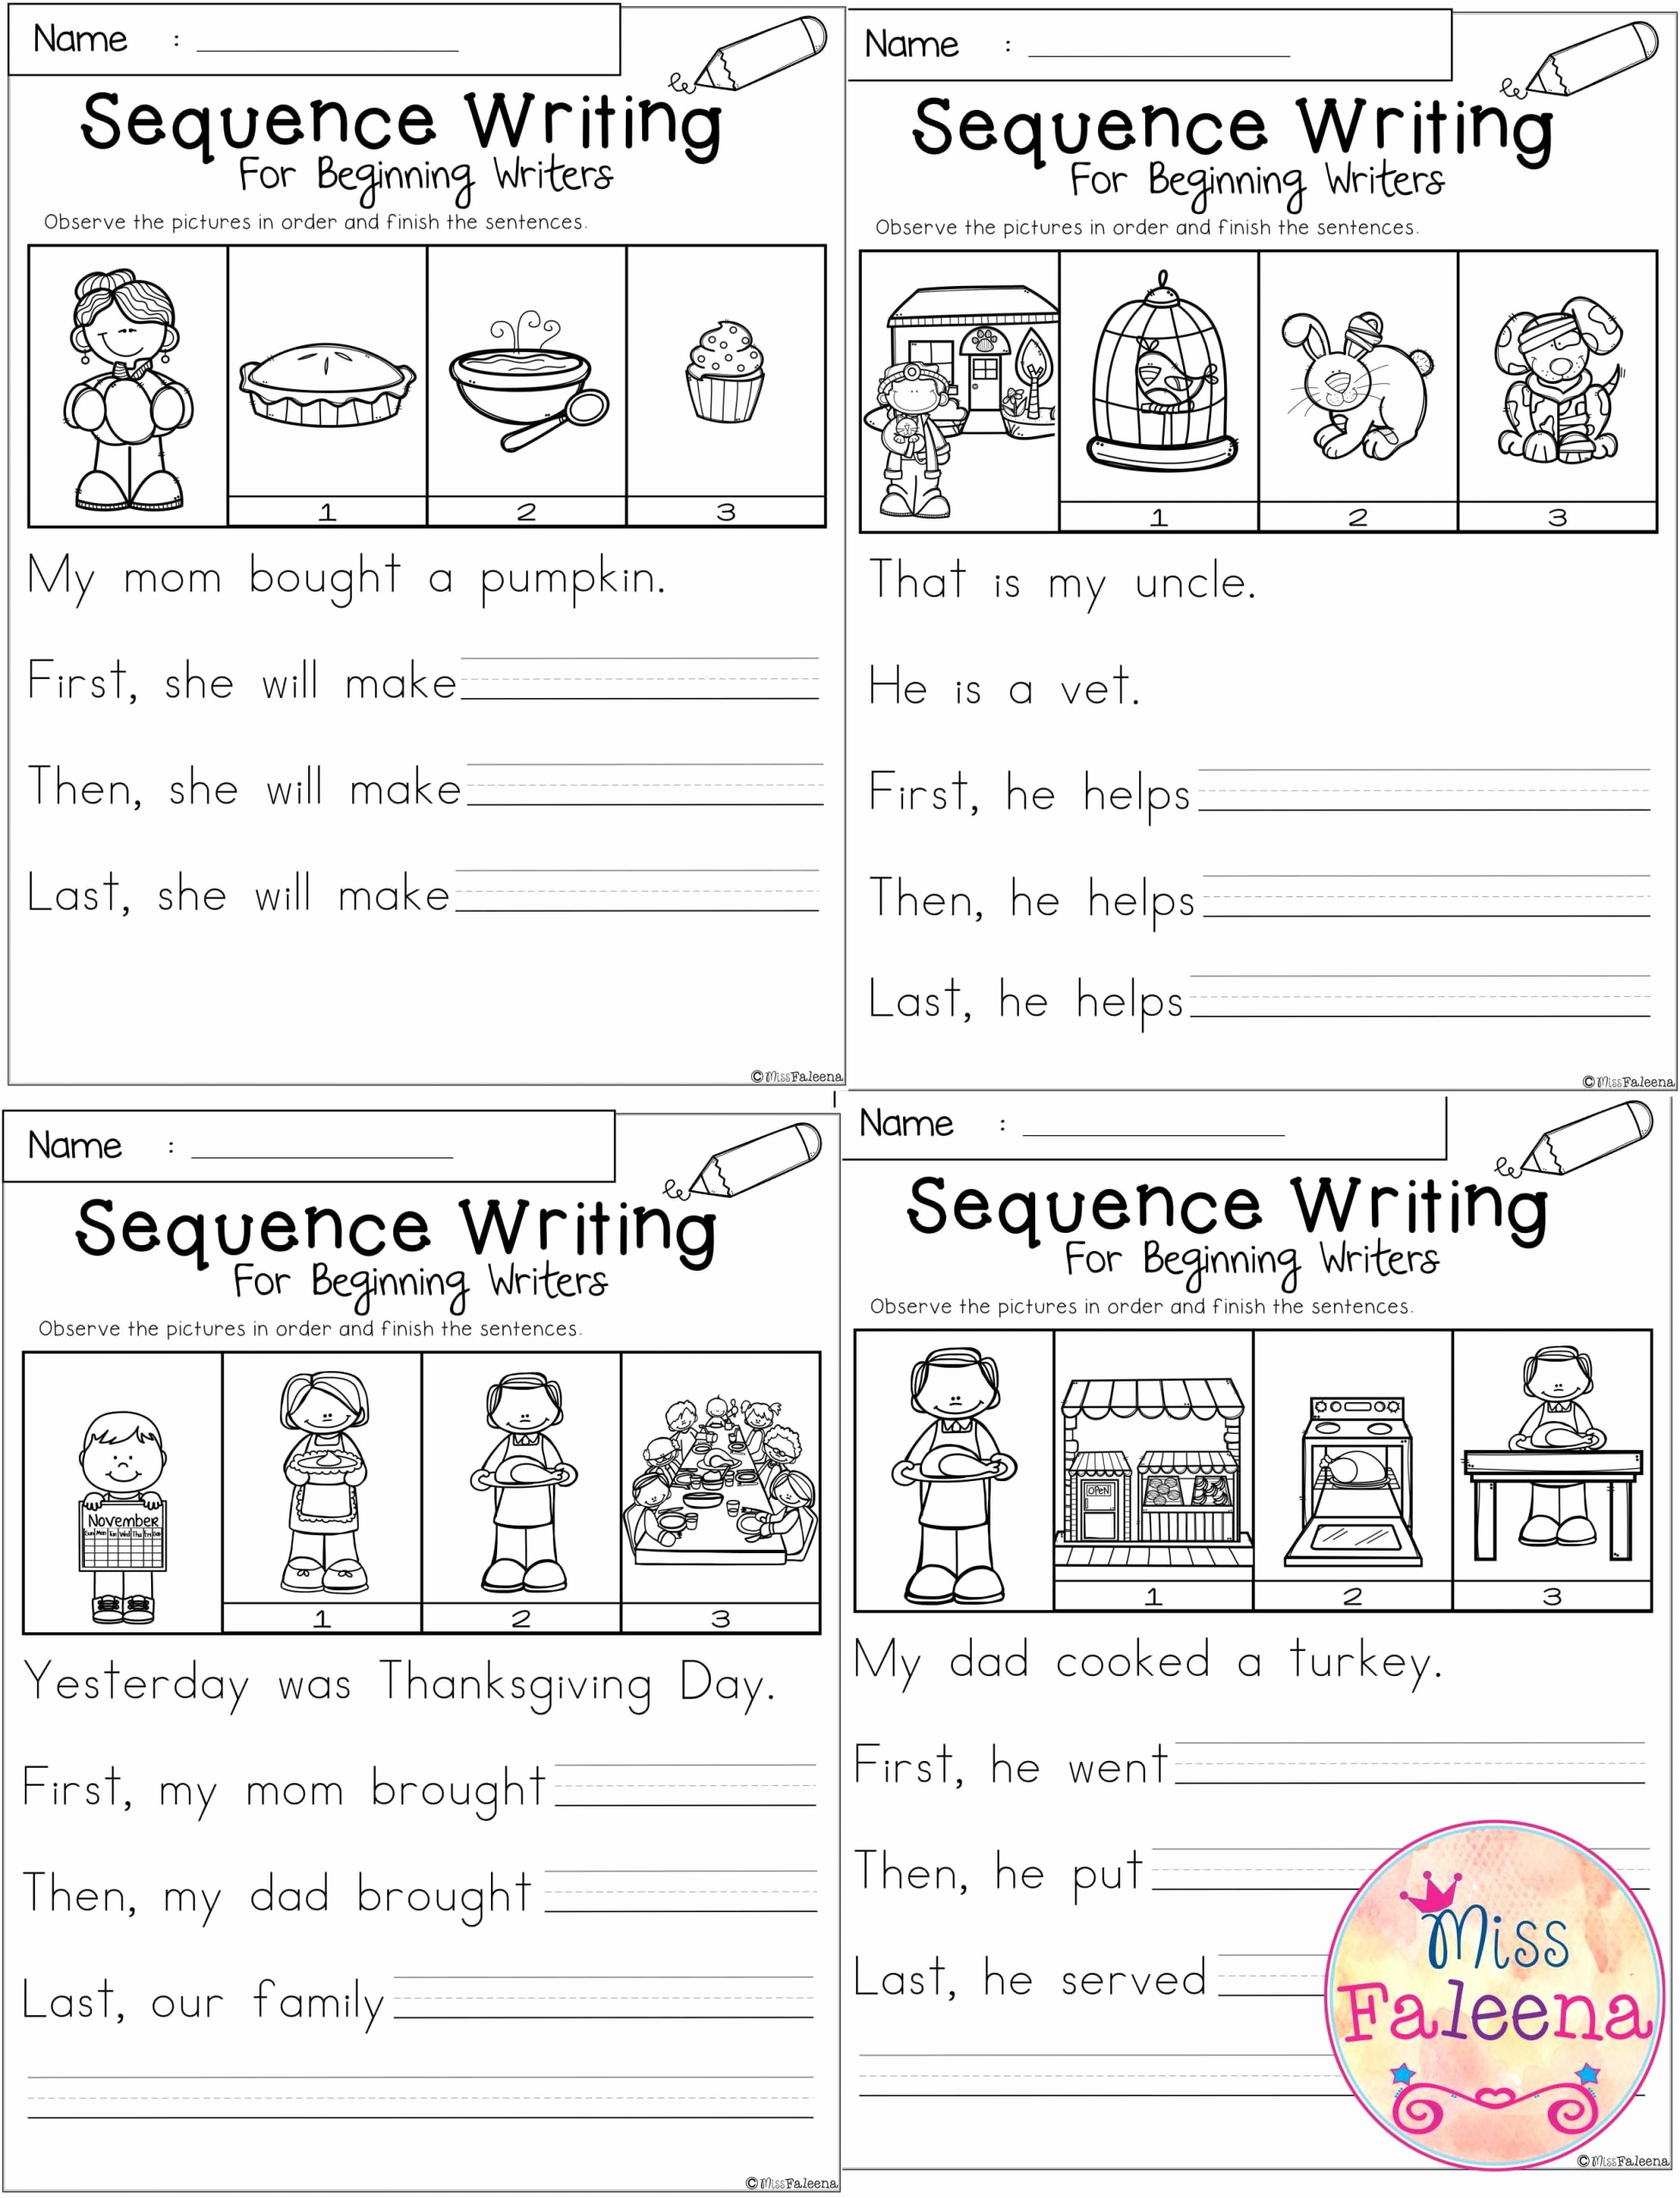 Sequencing Worksheets for Kindergarten Elegant 20 Sequencing Worksheets for Kindergarten